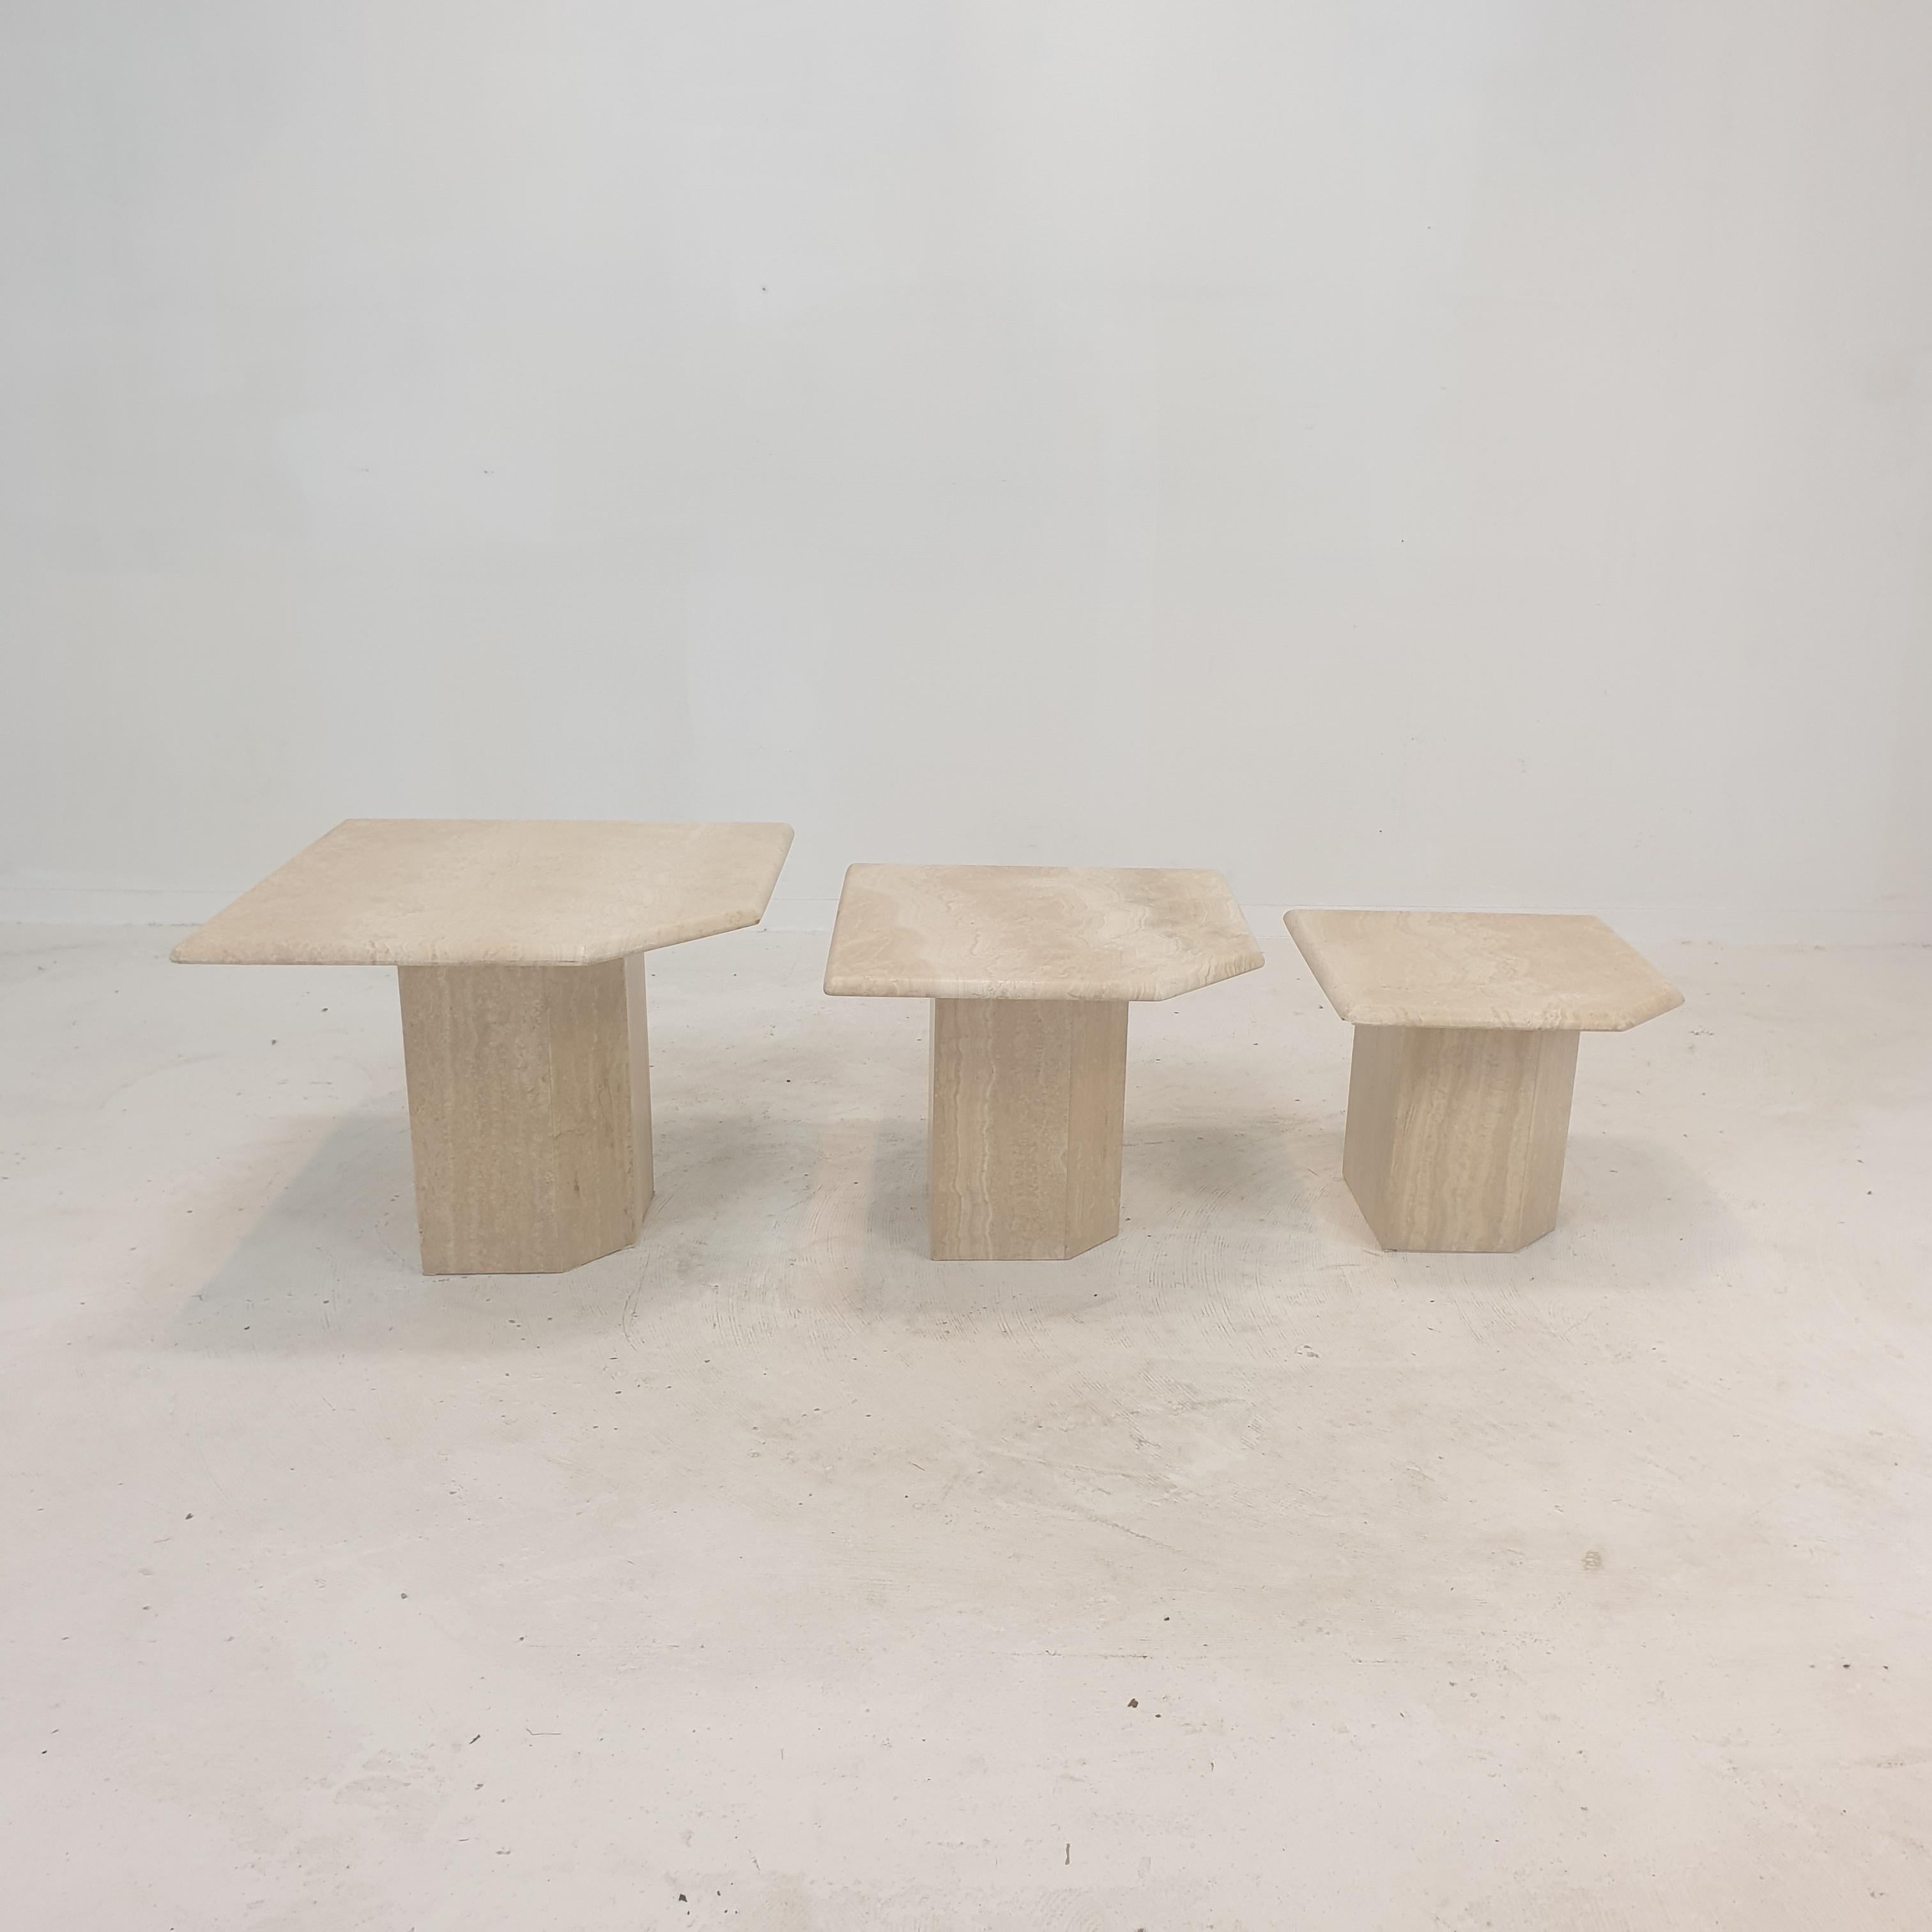 Superbe ensemble de 3 tables basses ou d'appoint italiennes, fabriquées à la main en marbre. 
Ils peuvent être utilisés à l'intérieur ou à l'extérieur de la maison.

Les tables ont toutes une hauteur différente, de sorte qu'elles s'emboîtent les